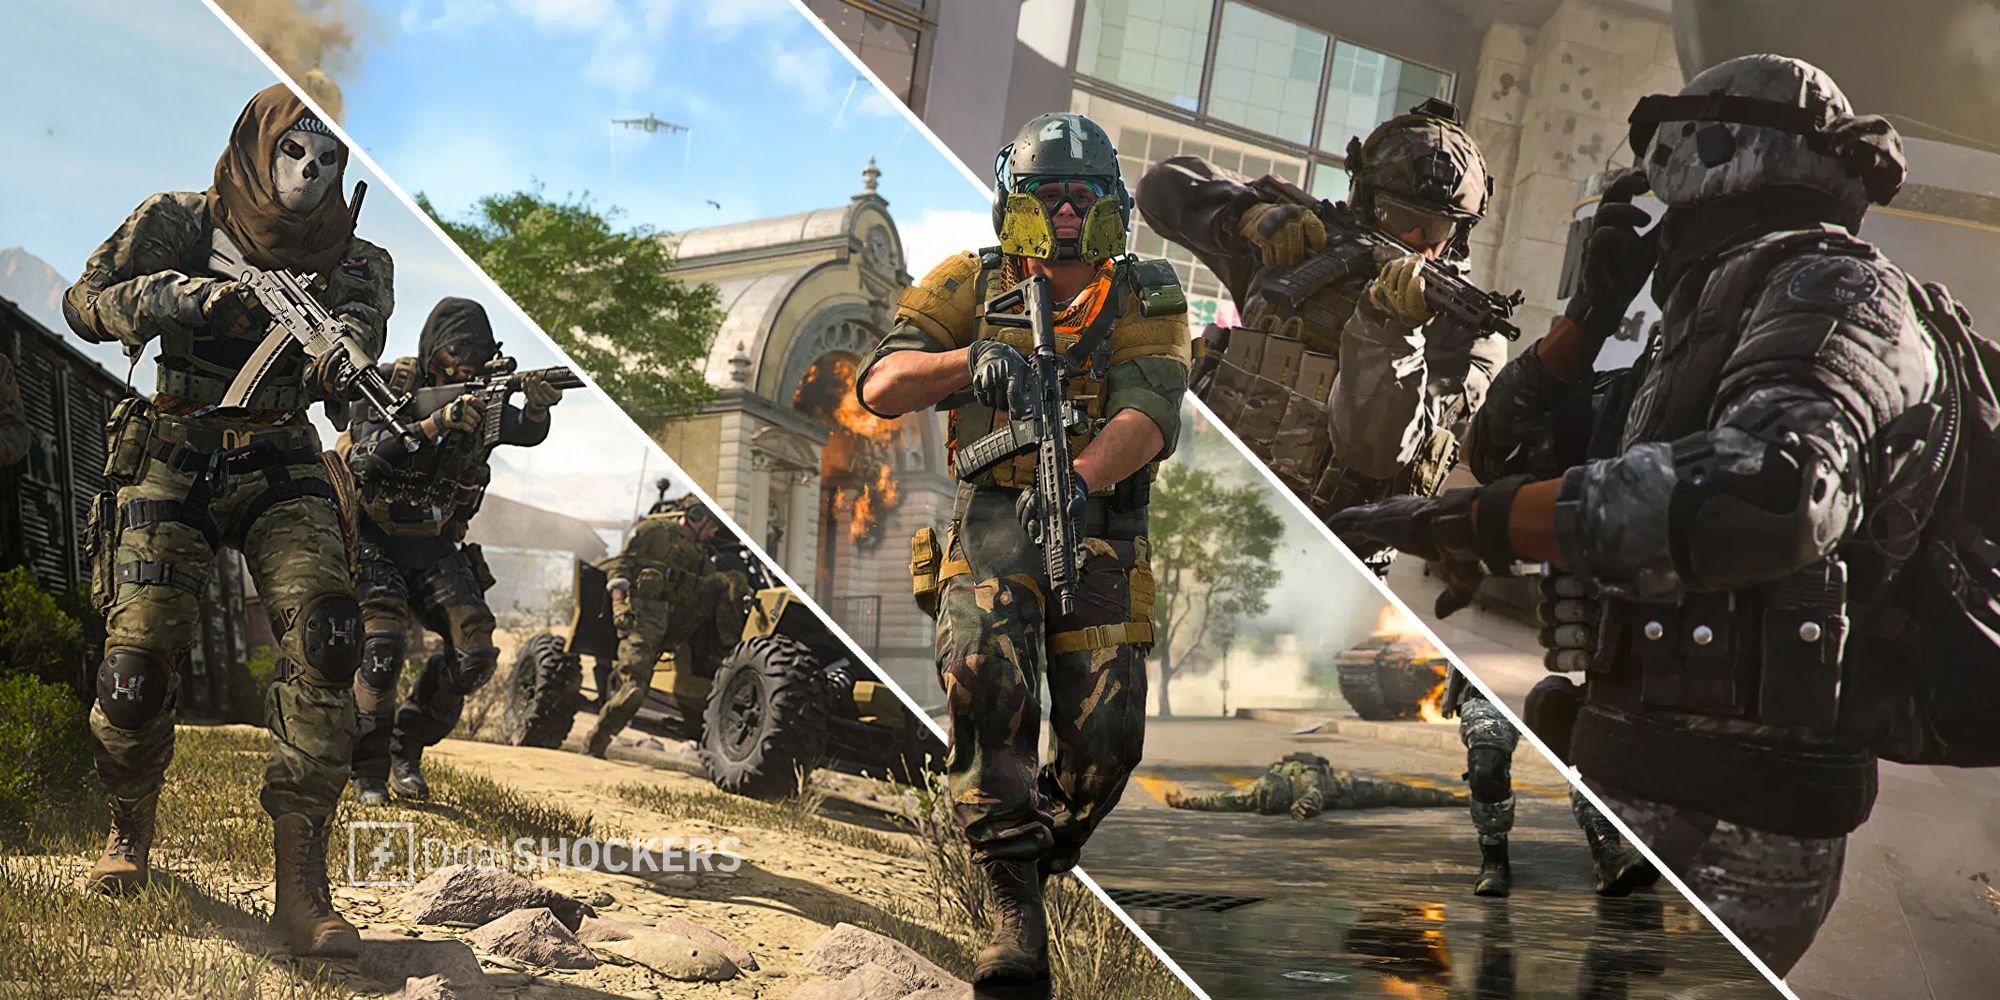 Call of Duty Modern Warfare 2 Release Date